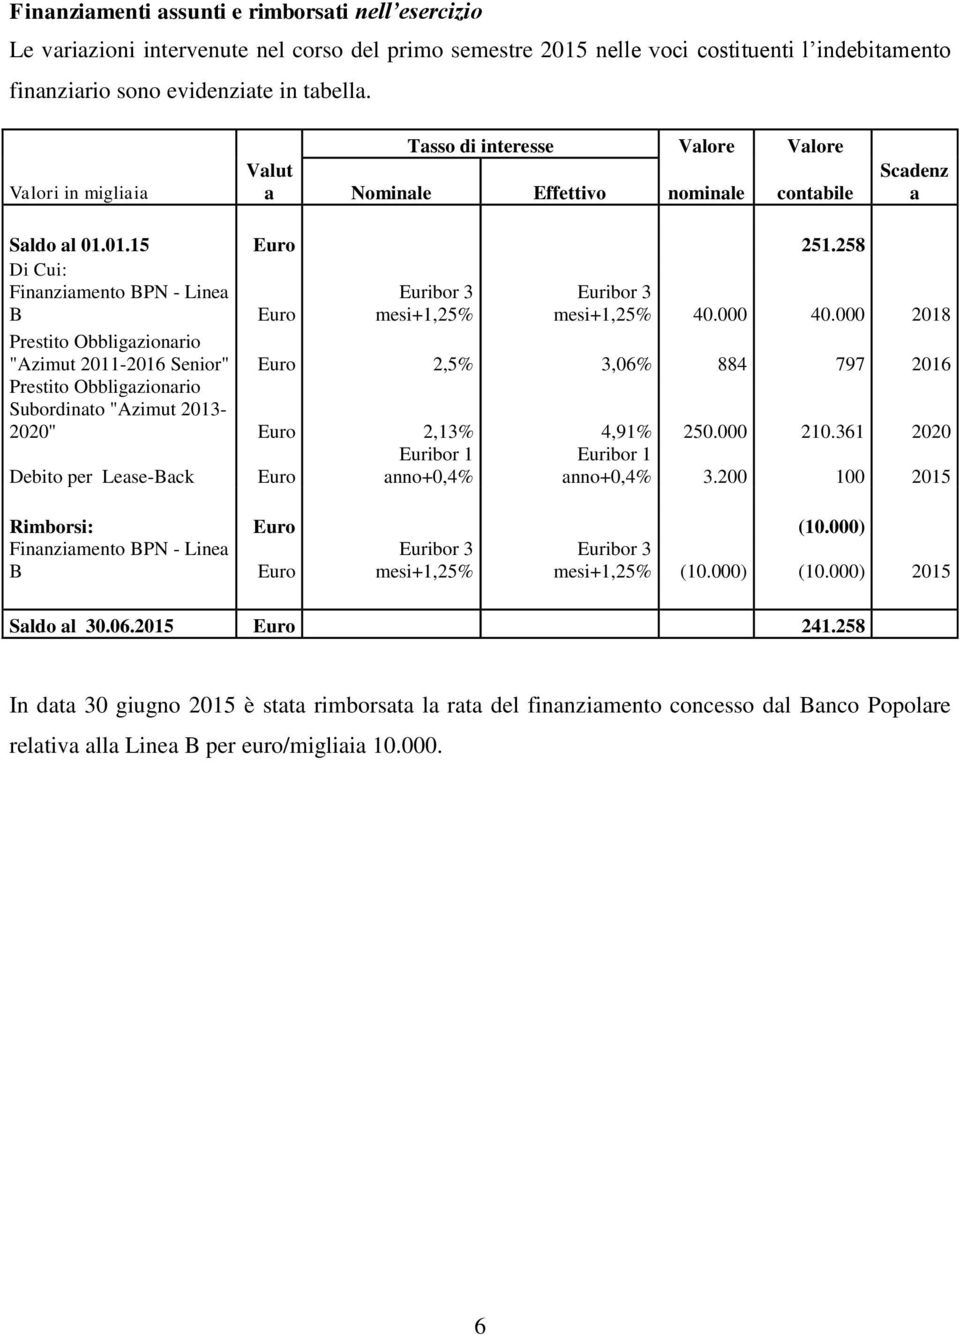 258 Di Cui: Finanziamento BPN - Linea B Euro Euribor 3 mesi+1,25% Euribor 3 mesi+1,25% 40.000 40.